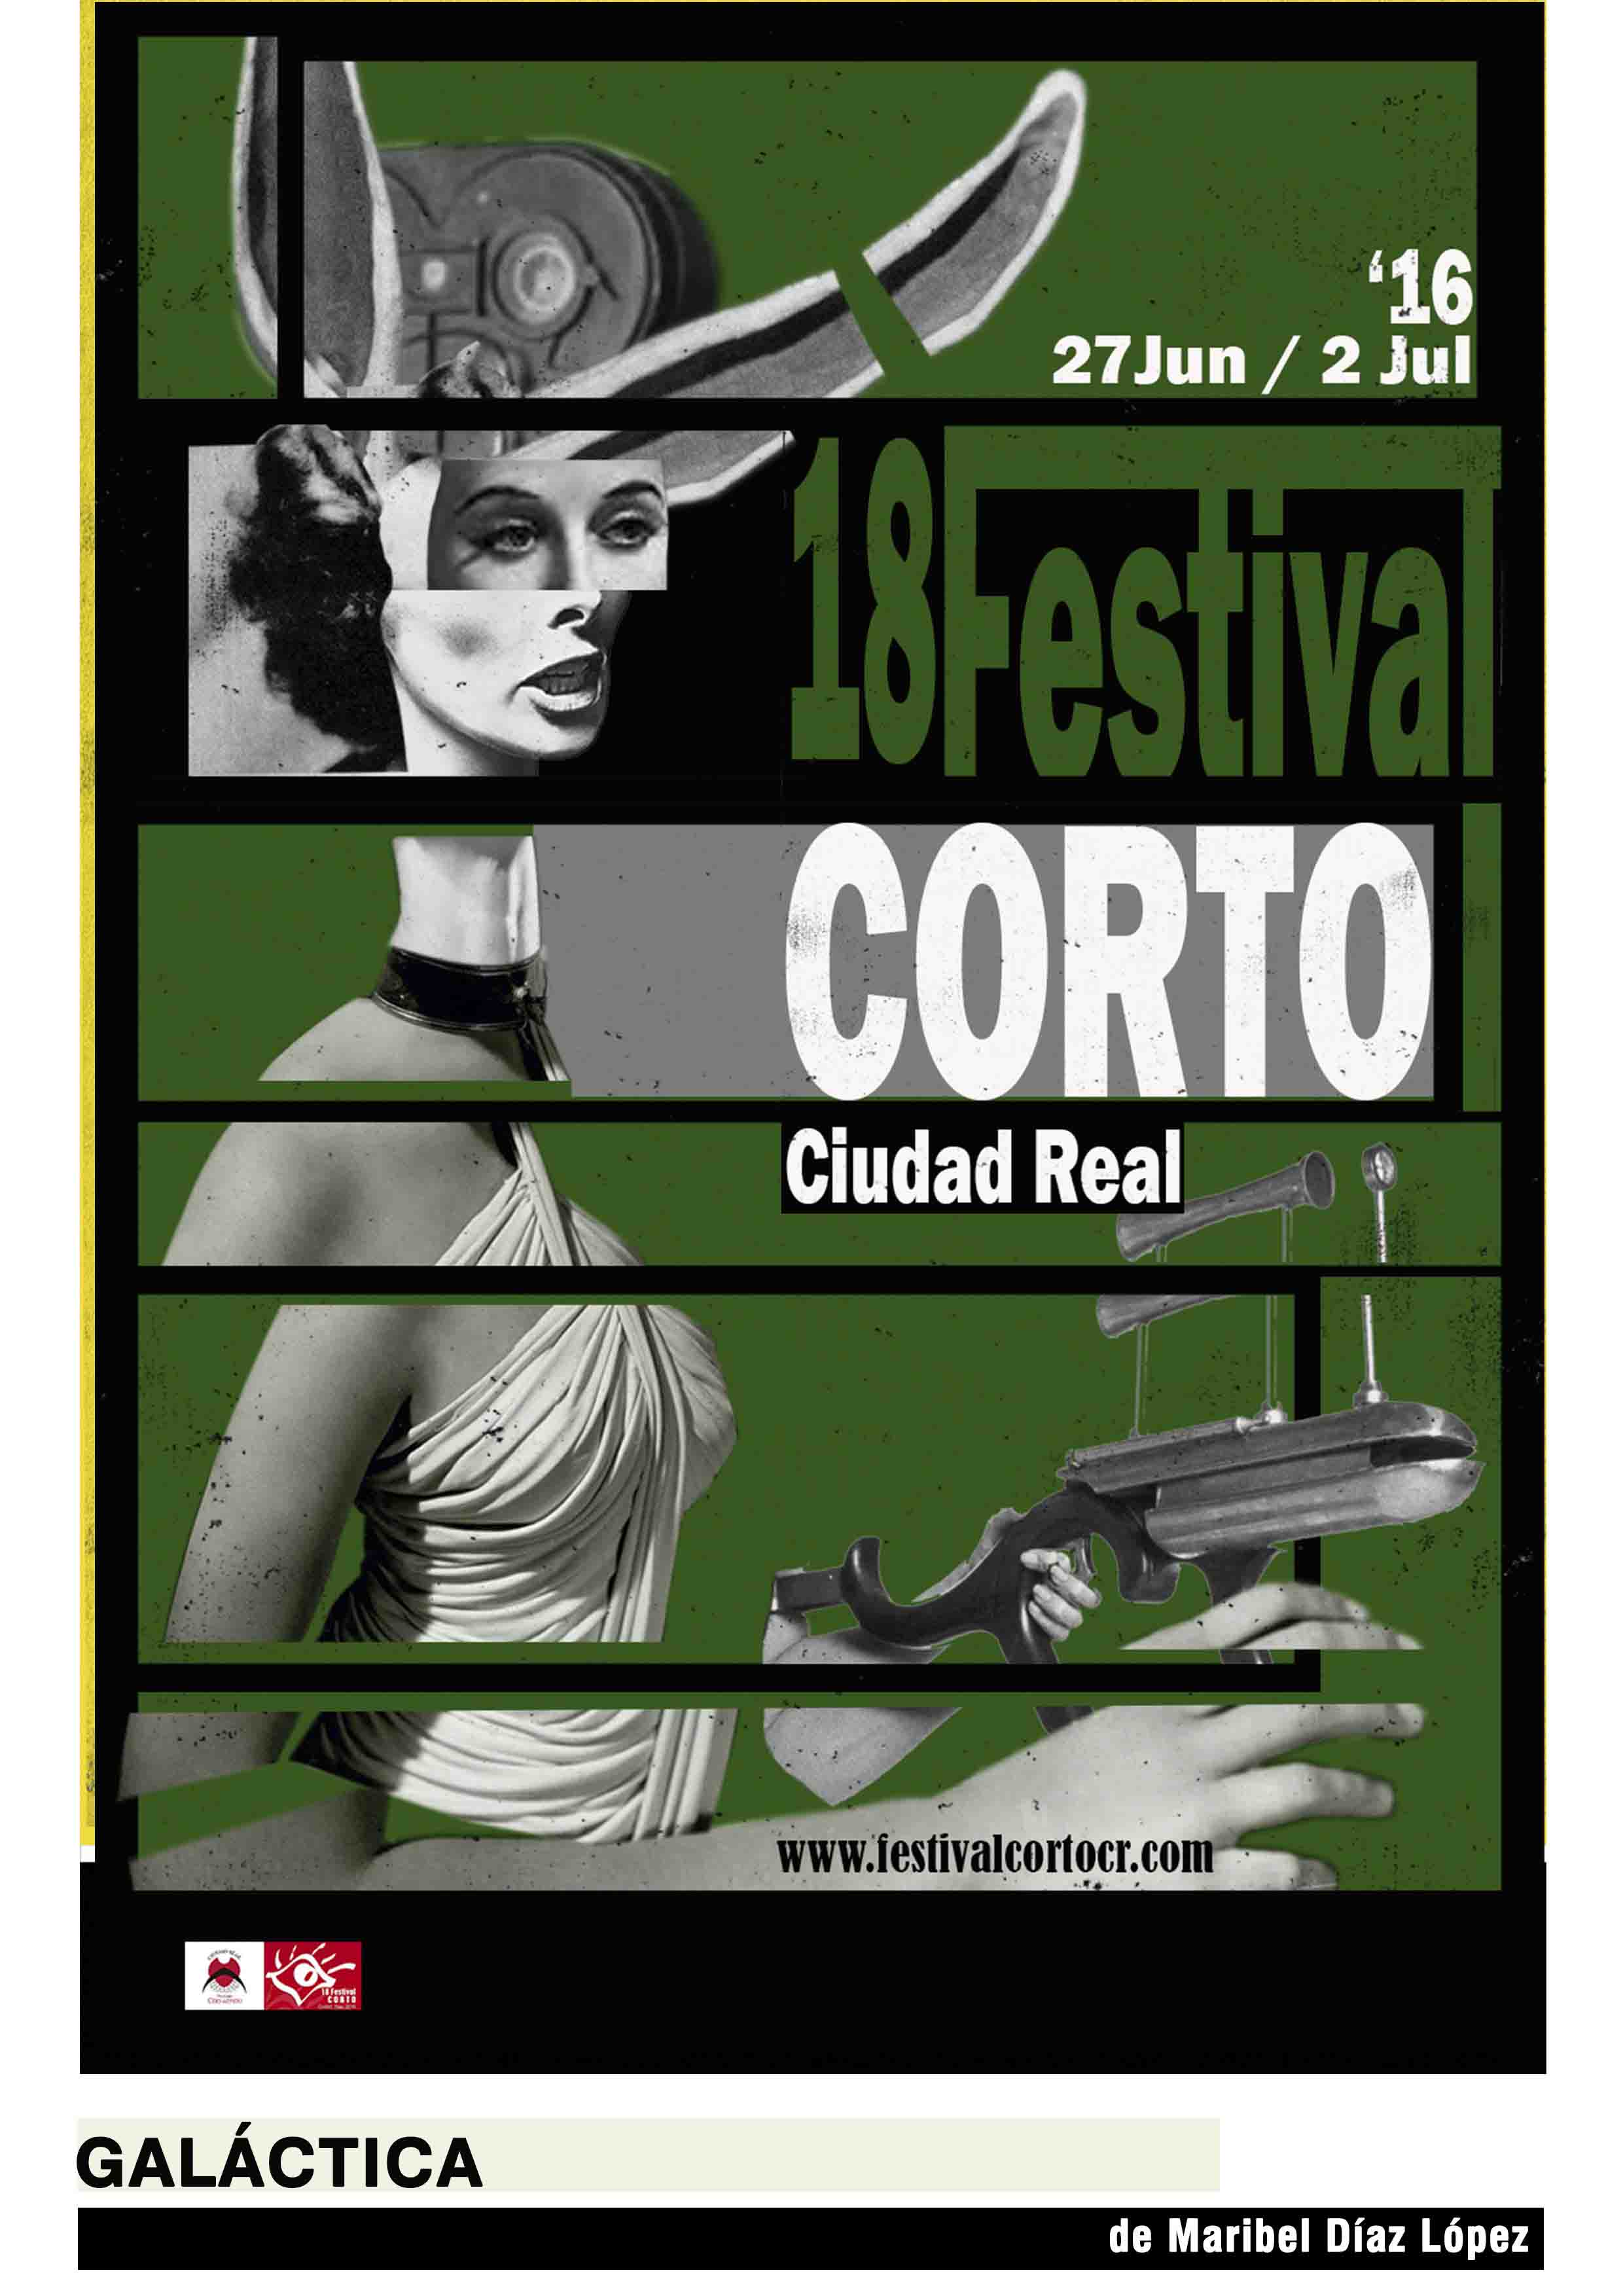 Inicio - Festival Corto Ciudad Real